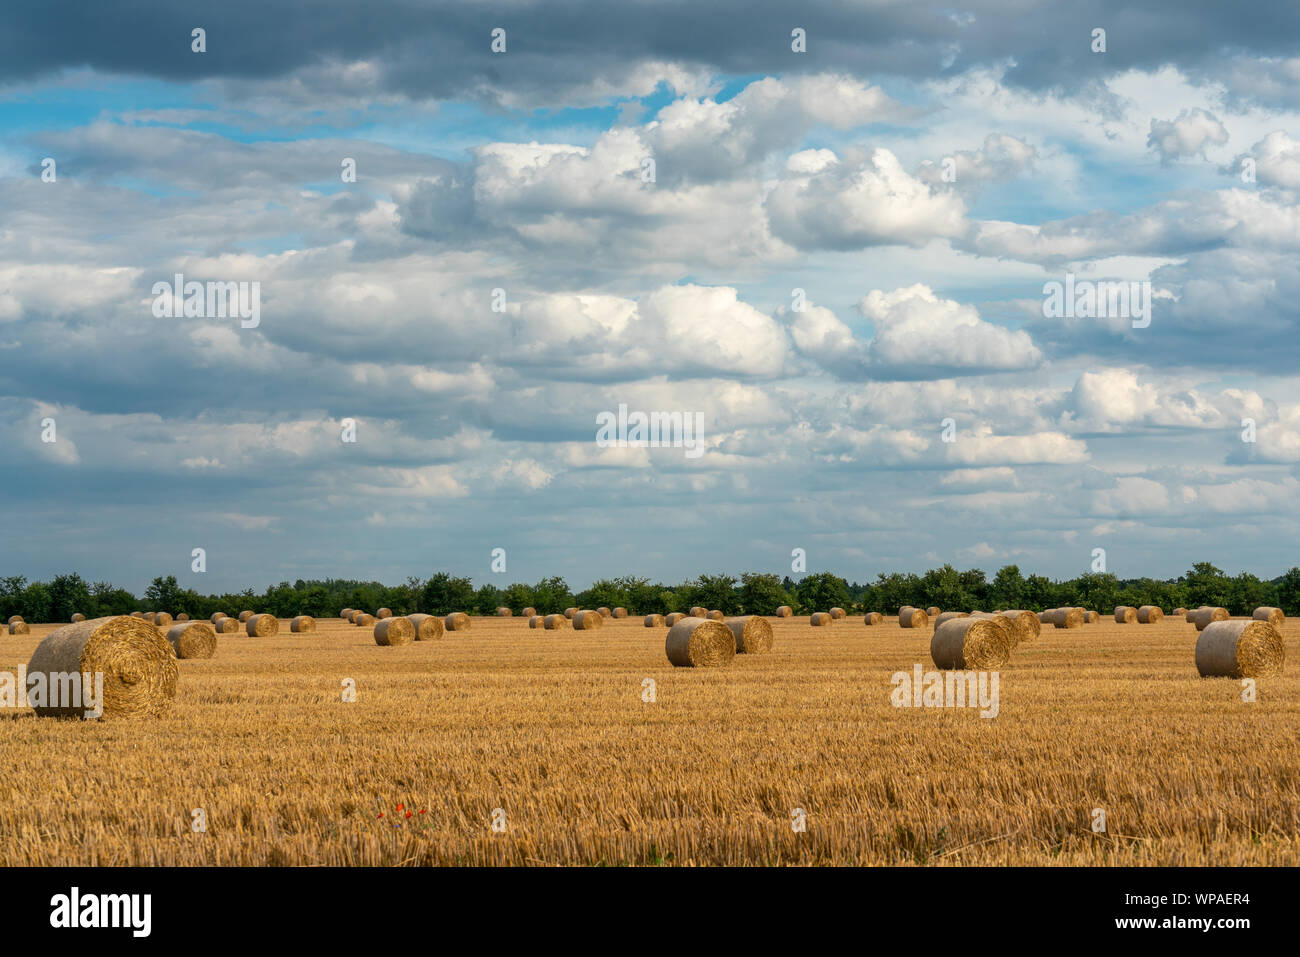 Allegro autunno scena con le balle di paglia su una falciata campo di grano sotto il sole con nubi imponenti in skye Foto Stock